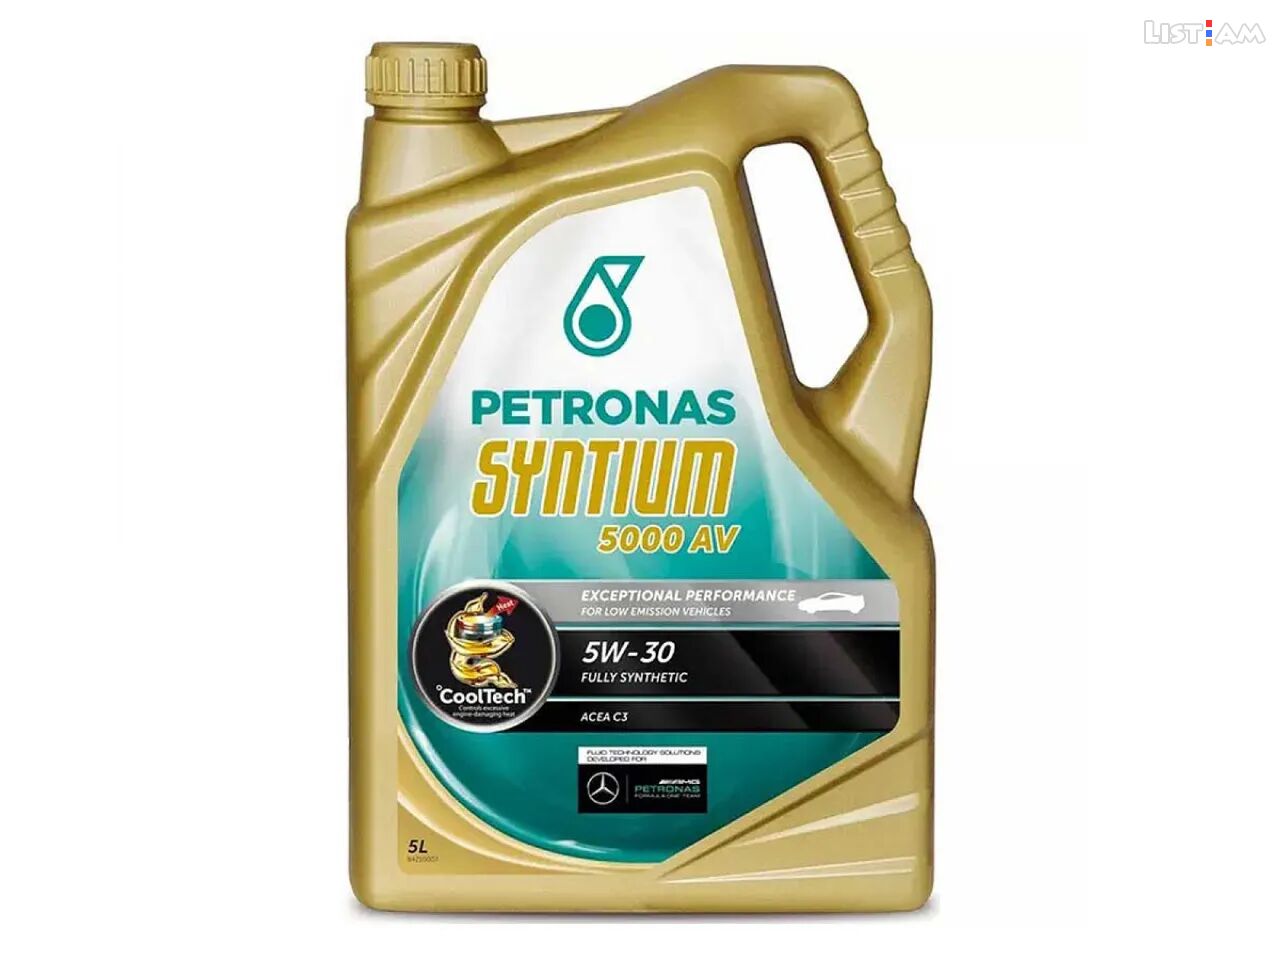 Յուղ Petronas